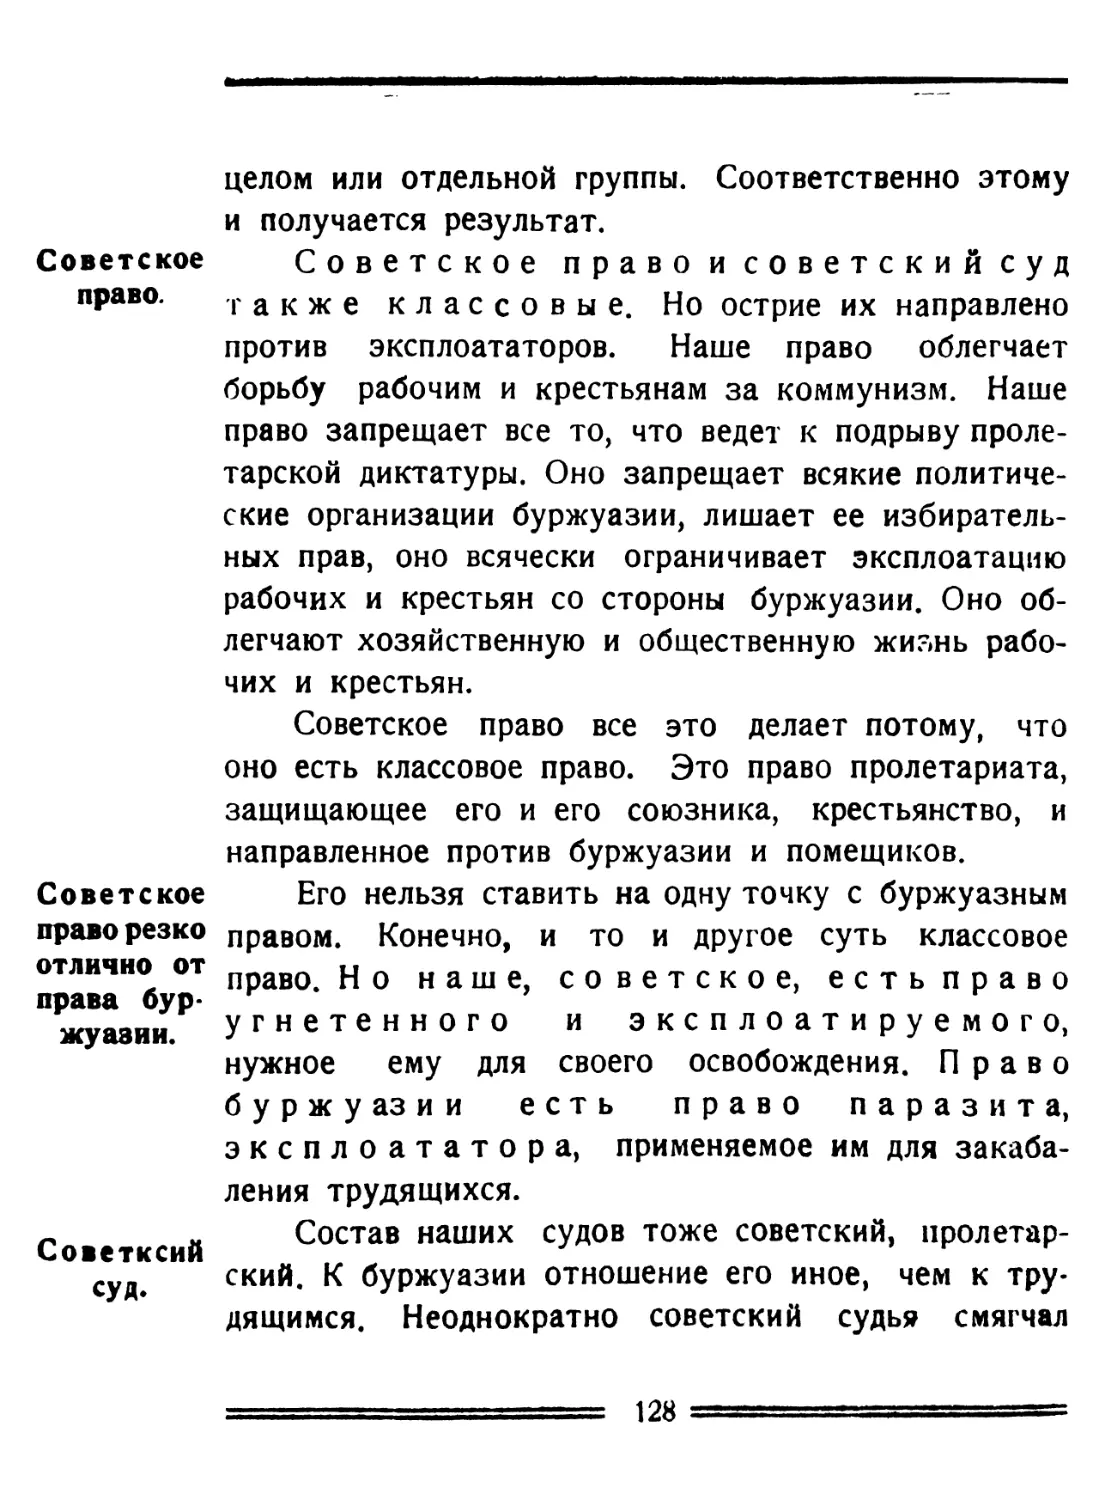 Советское право
Различие советского права от буржуазного
Советский суд